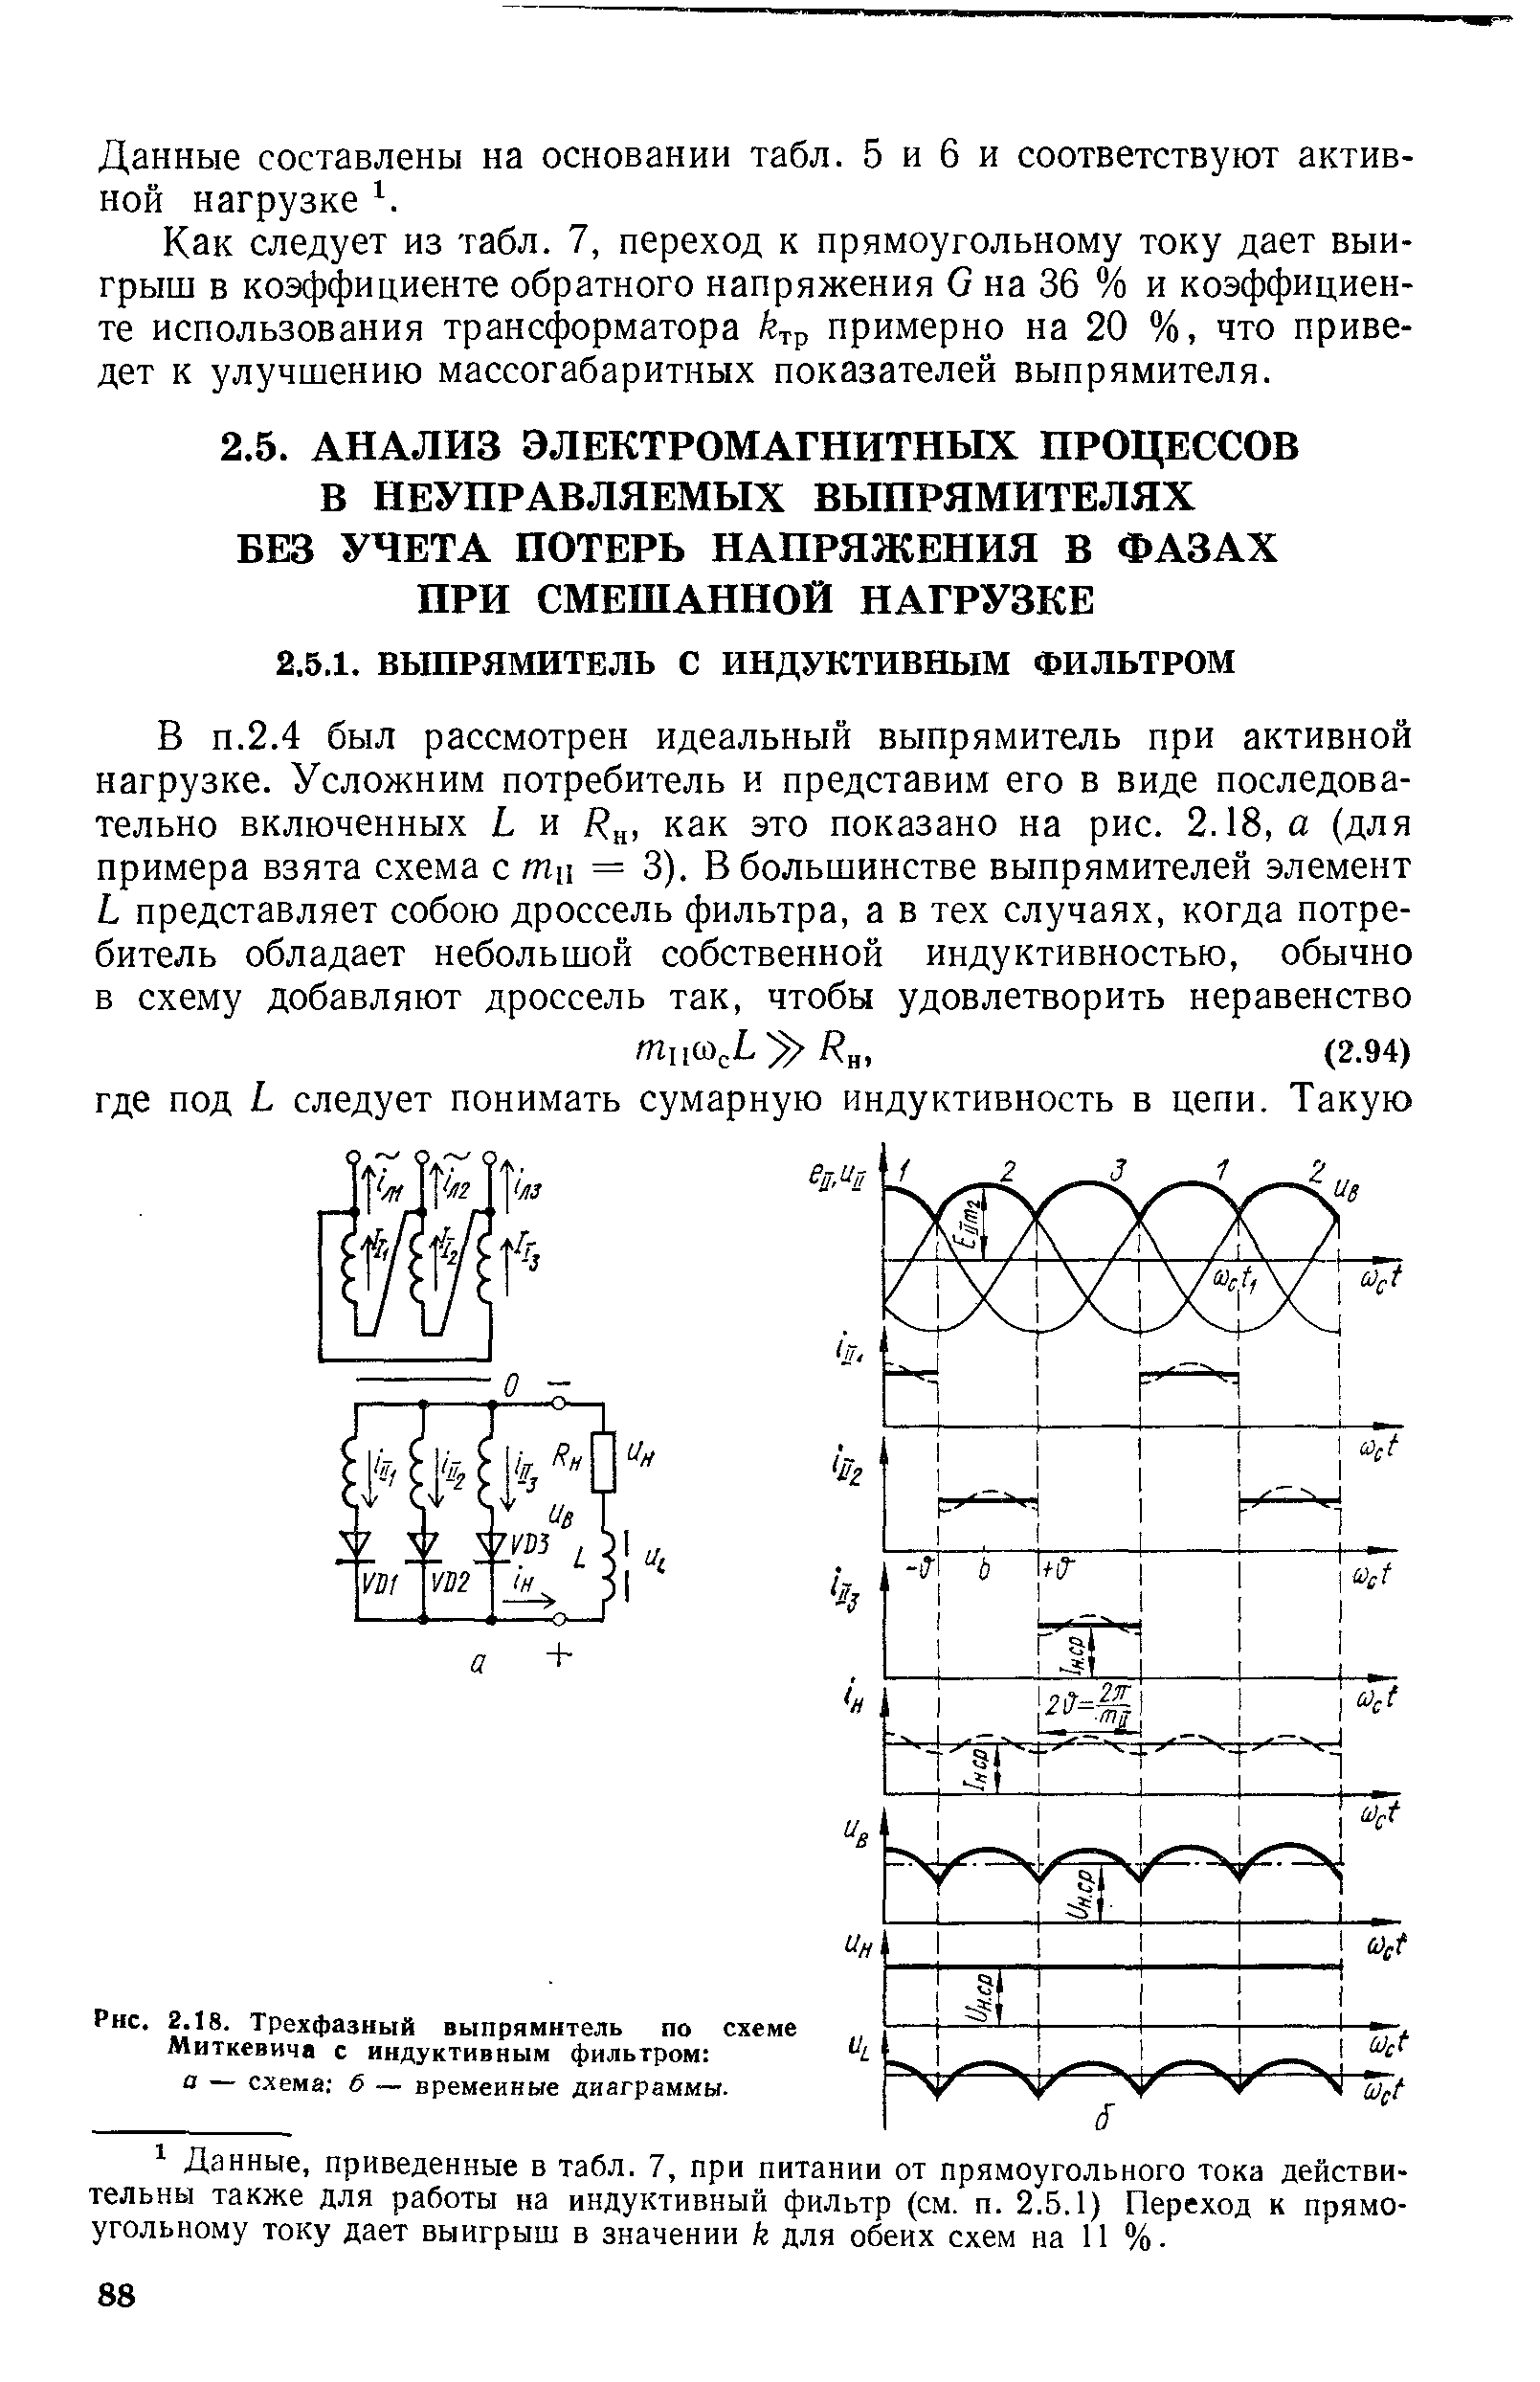 Трехфазный выпрямитель по схеме Миткевича с индуктивным фильтром а — схема б — временные диаграммы.
